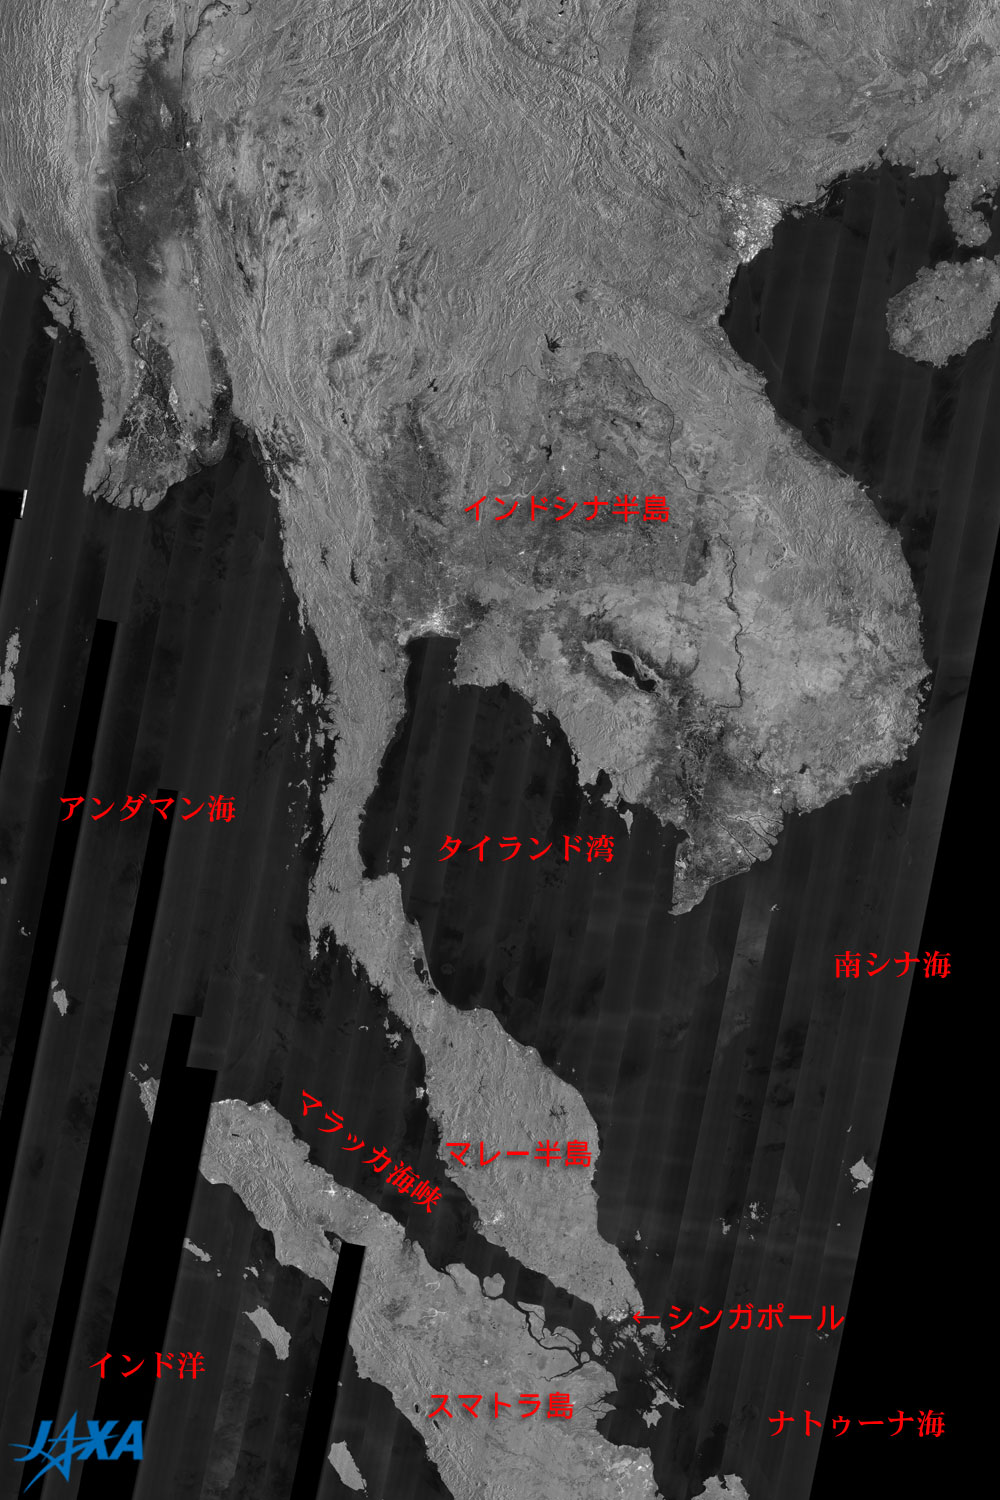 陸も海も明るいシンガポールのsar画像 地球が見える Jaxa 第一宇宙技術部門 地球観測研究センター Eorc